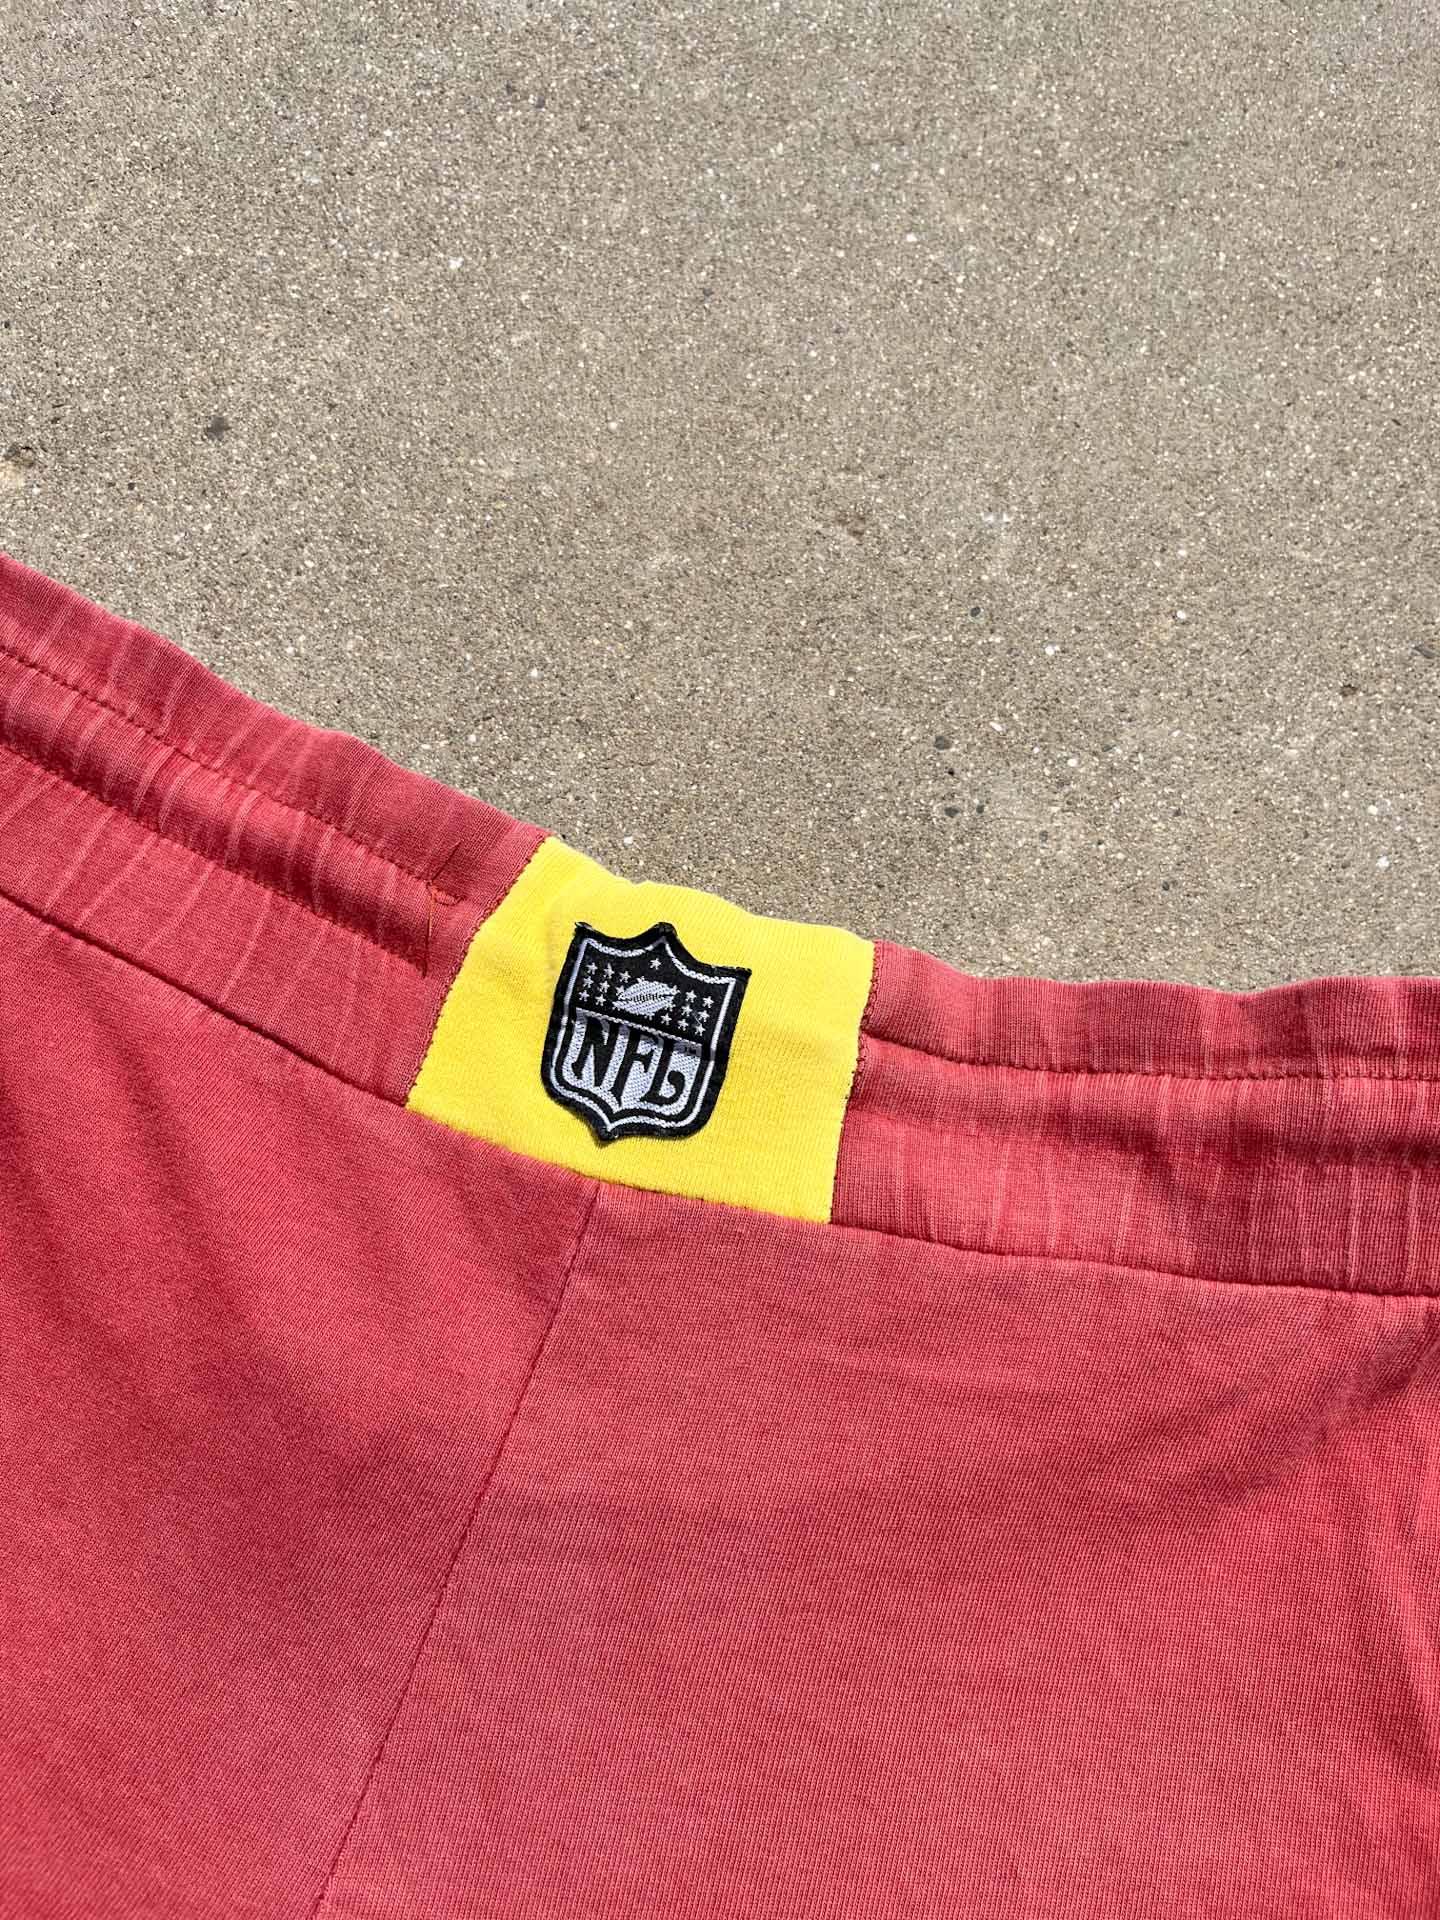 NFL Campri Redskins Shorts - secondvintage